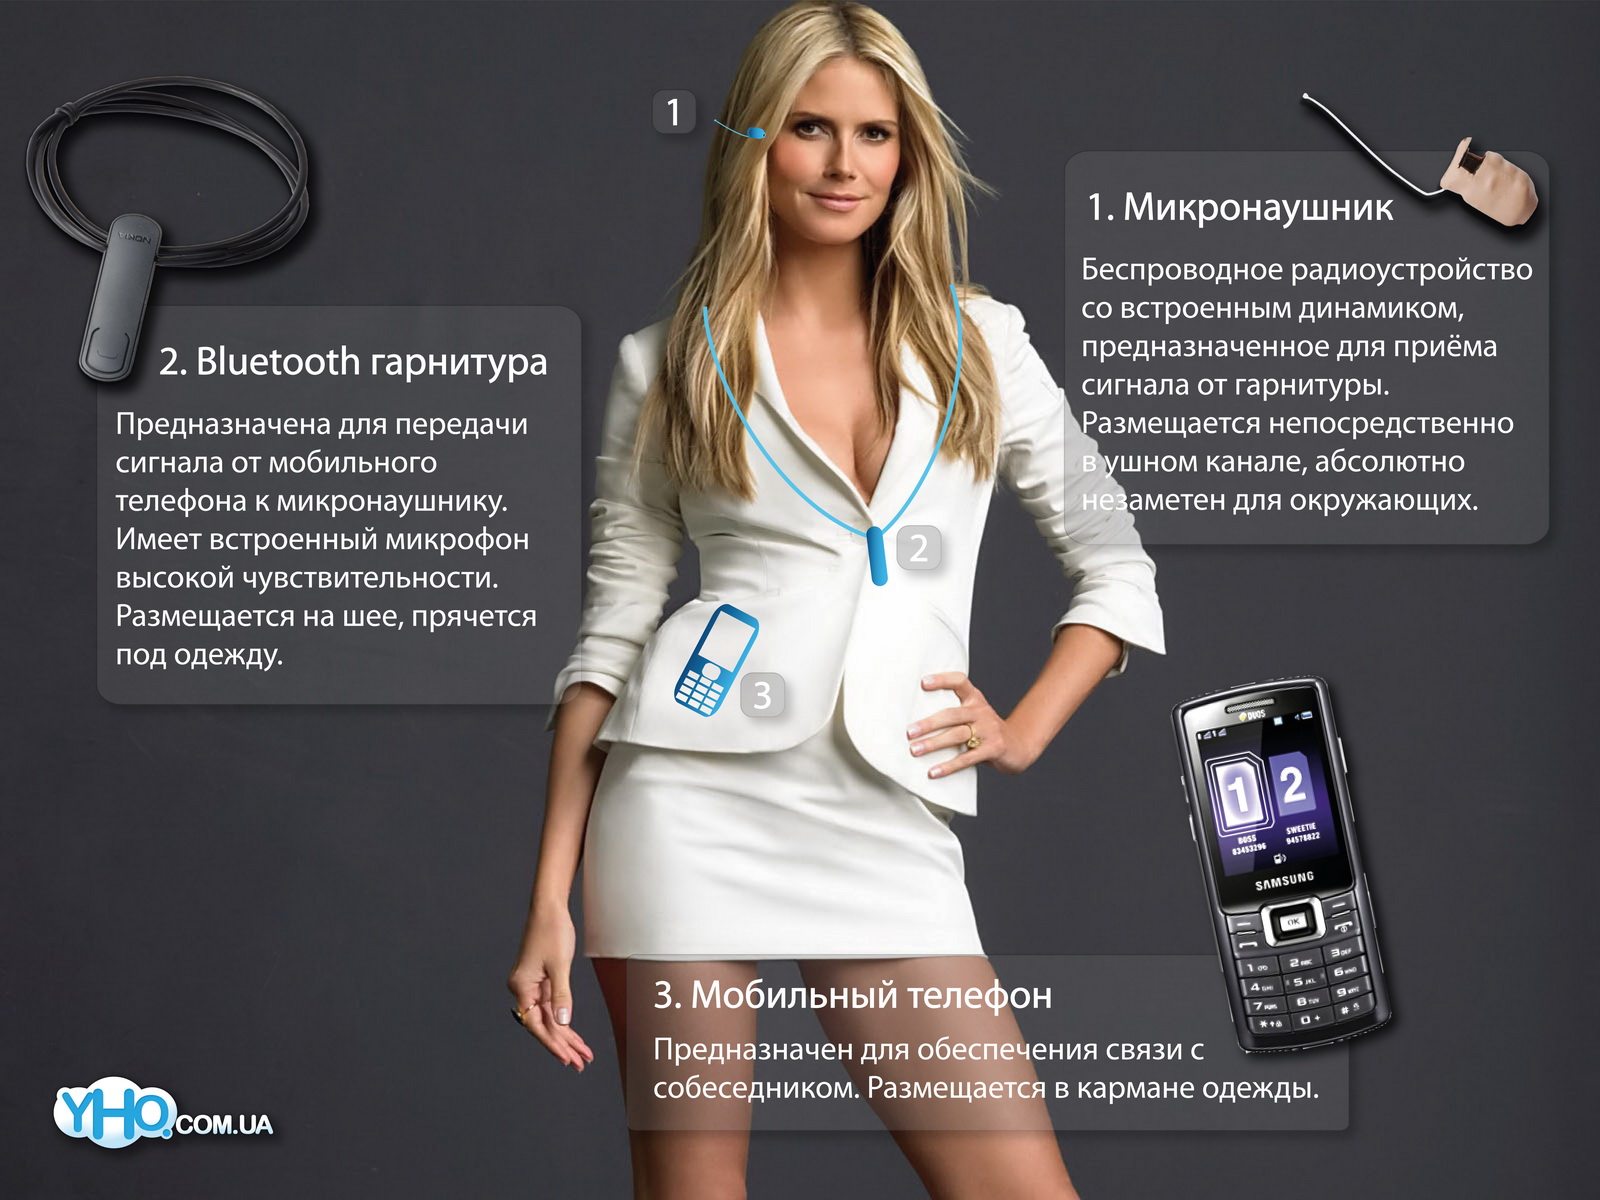 Описание: Подключение комплекта микронаушника с Bluetooth-гарнитурой к мобильному телефону